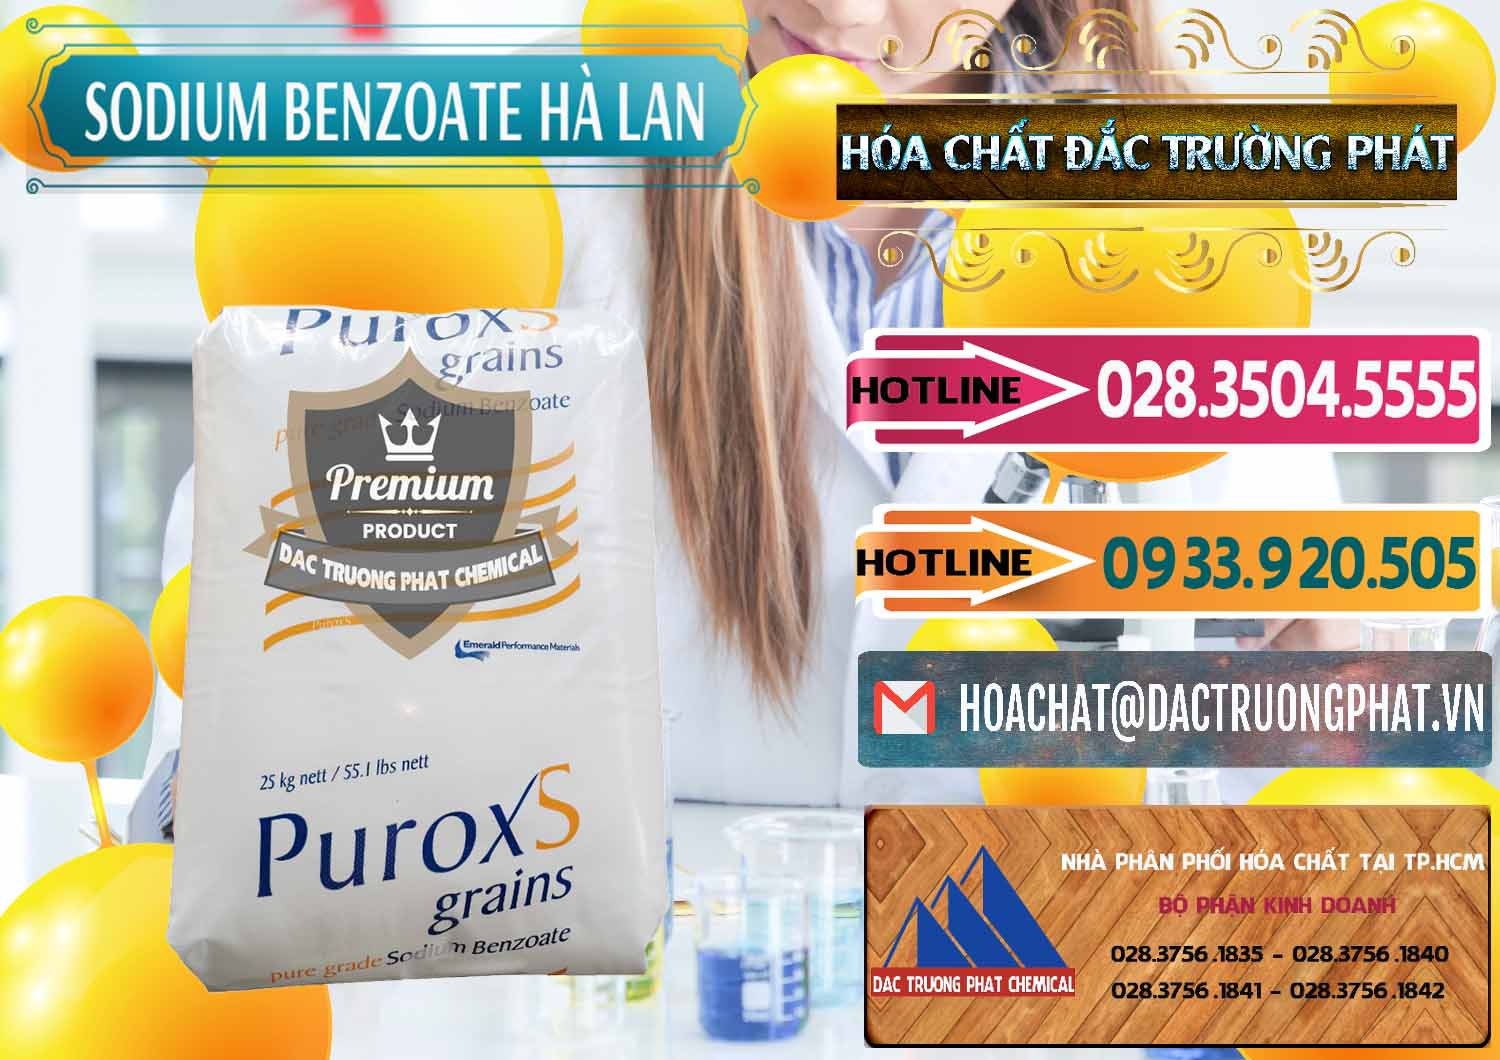 Nơi chuyên nhập khẩu và bán Sodium Benzoate - Mốc Bột Puroxs Hà Lan Netherlands - 0467 - Nơi phân phối và kinh doanh hóa chất tại TP.HCM - dactruongphat.vn